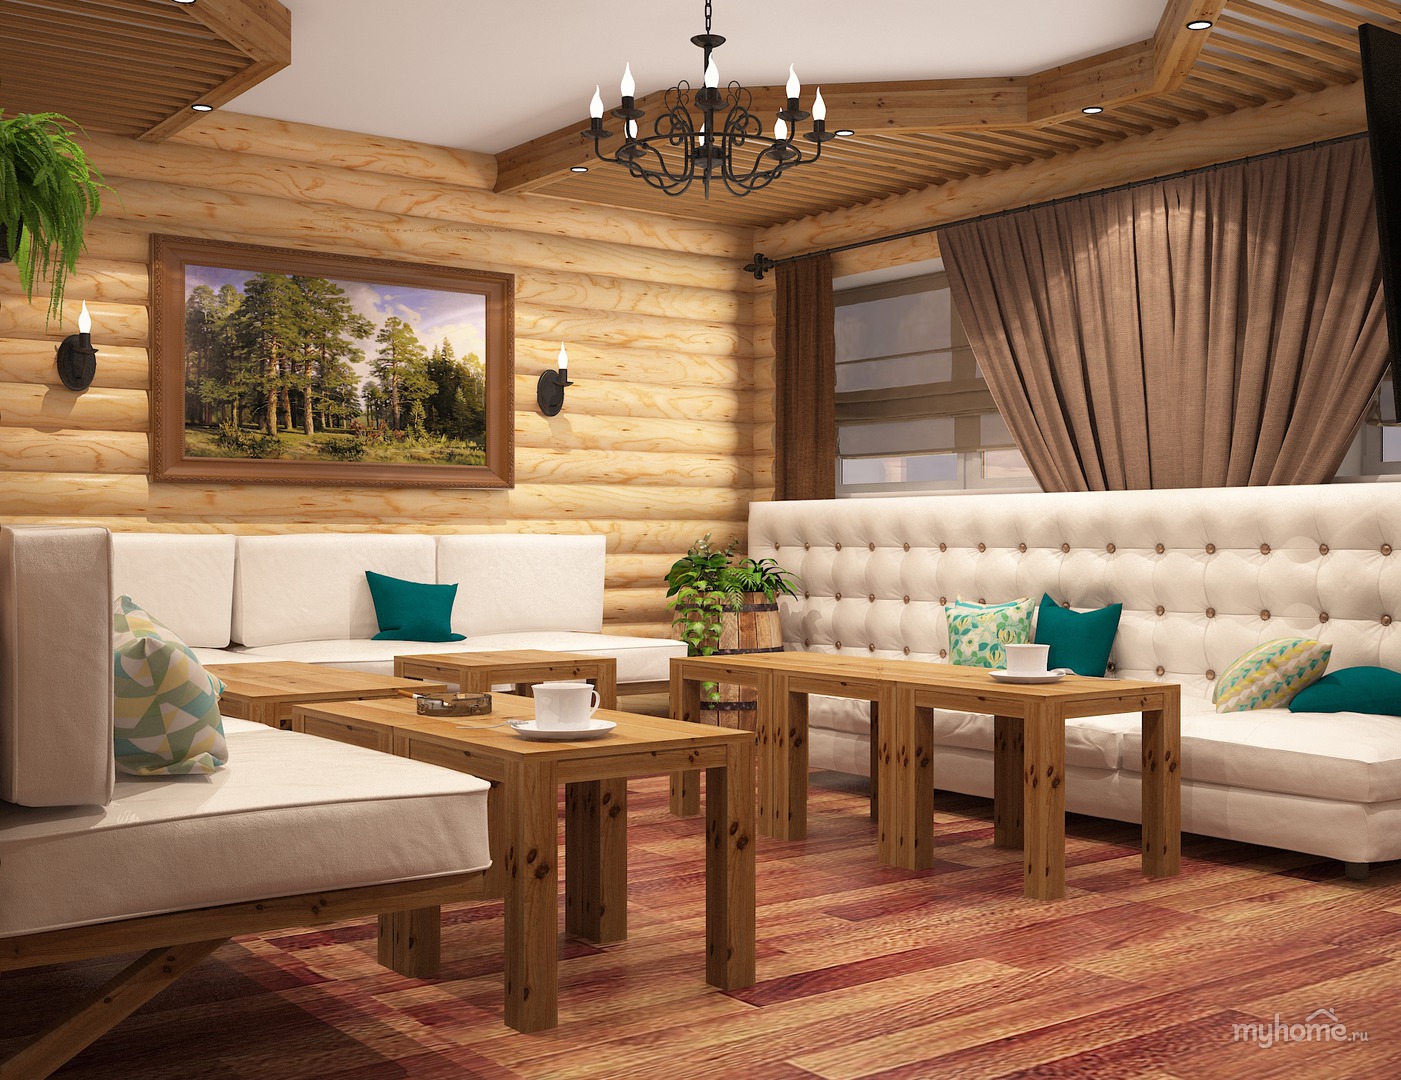 Мебель для бани в комнату отдыха из дерева, мебель для сауны под старину, кресло для бани